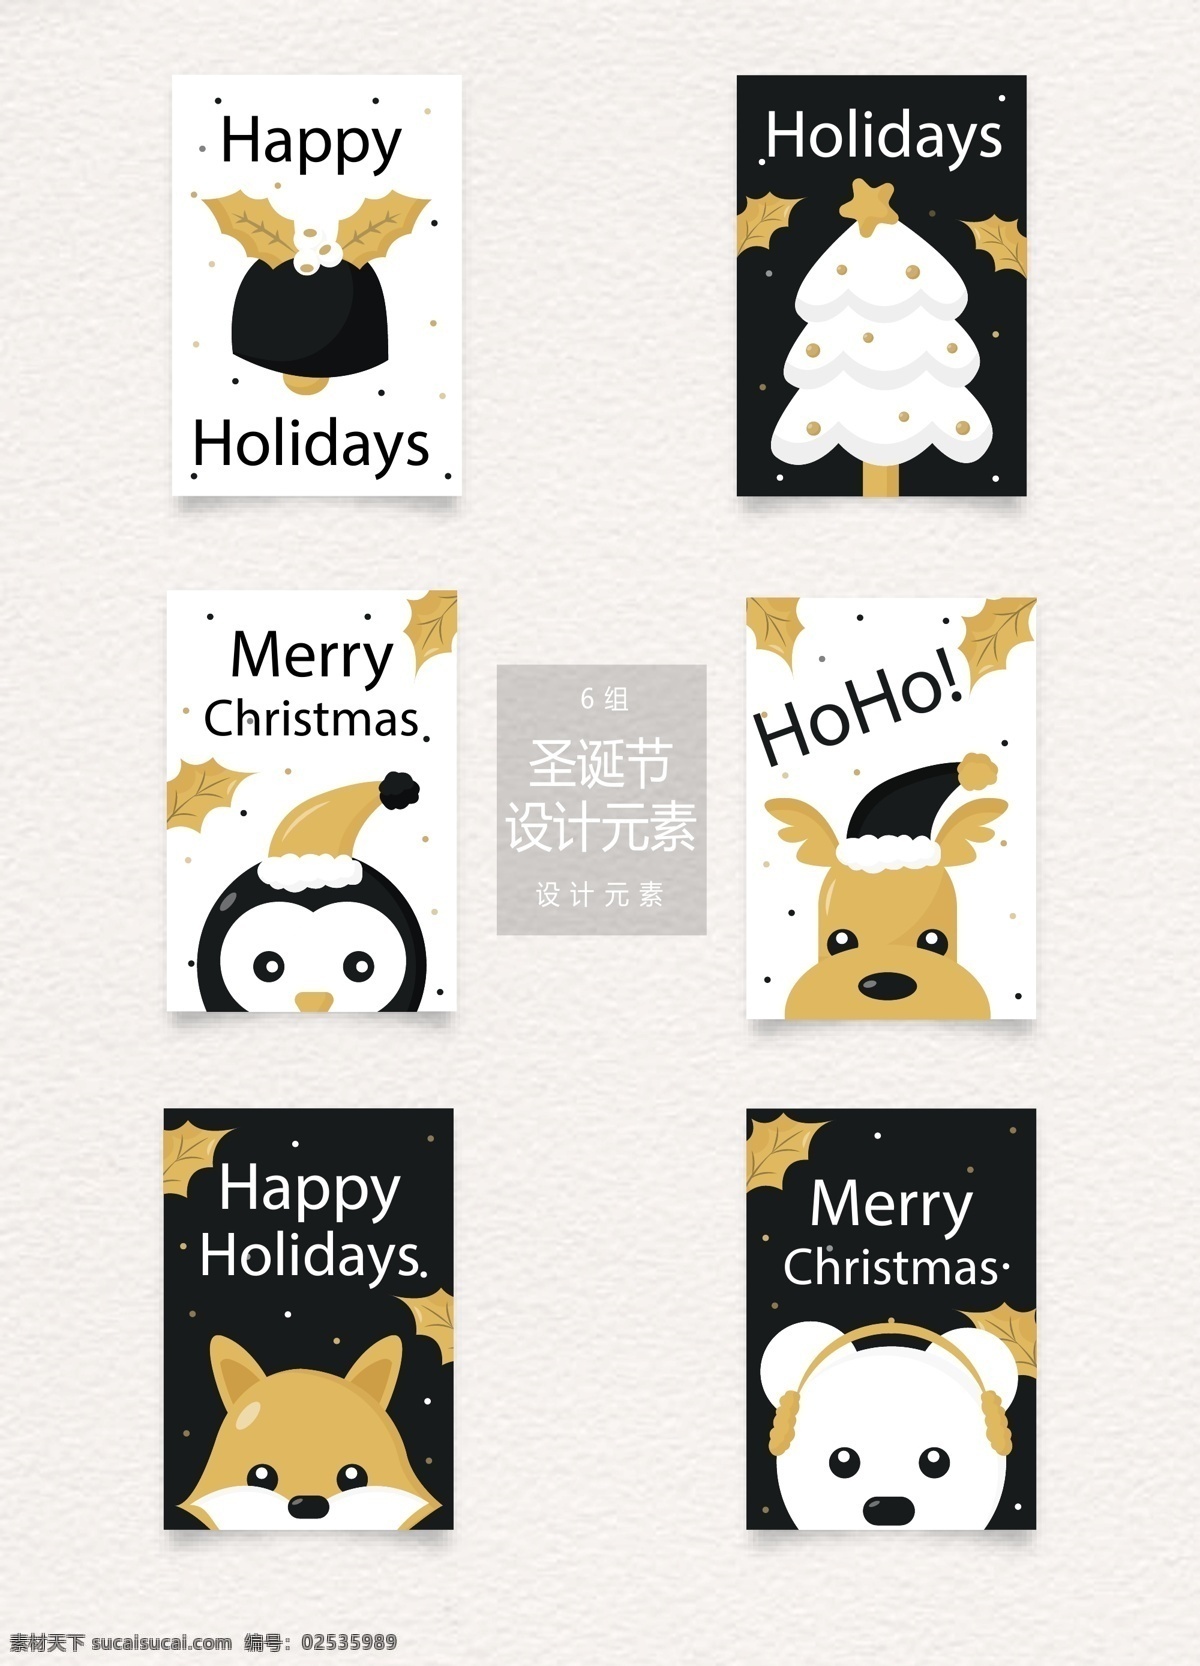 圣诞节 标签 元素 标签设计 卡通动物 圣诞树 圣诞节标签 圣诞 圣诞标签 设计元素 企鹅 驯鹿 麋鹿 狐狸